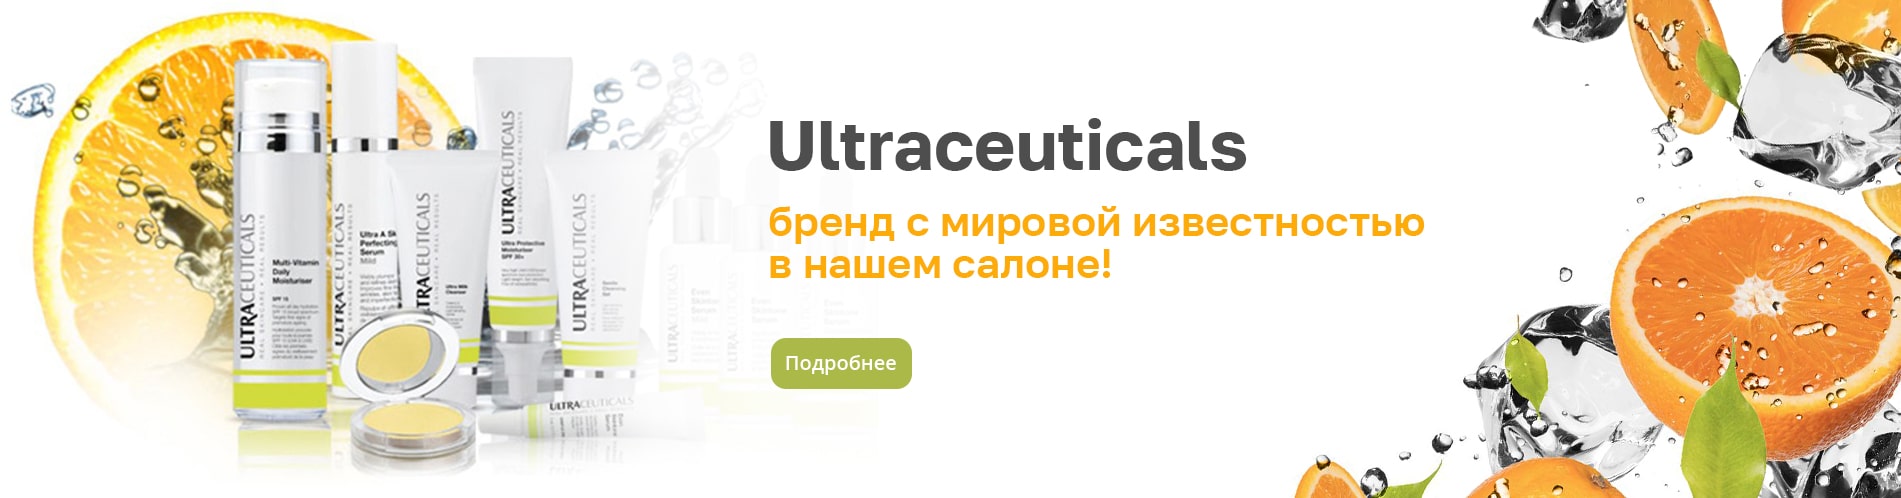 Косметика Ultraceuticals